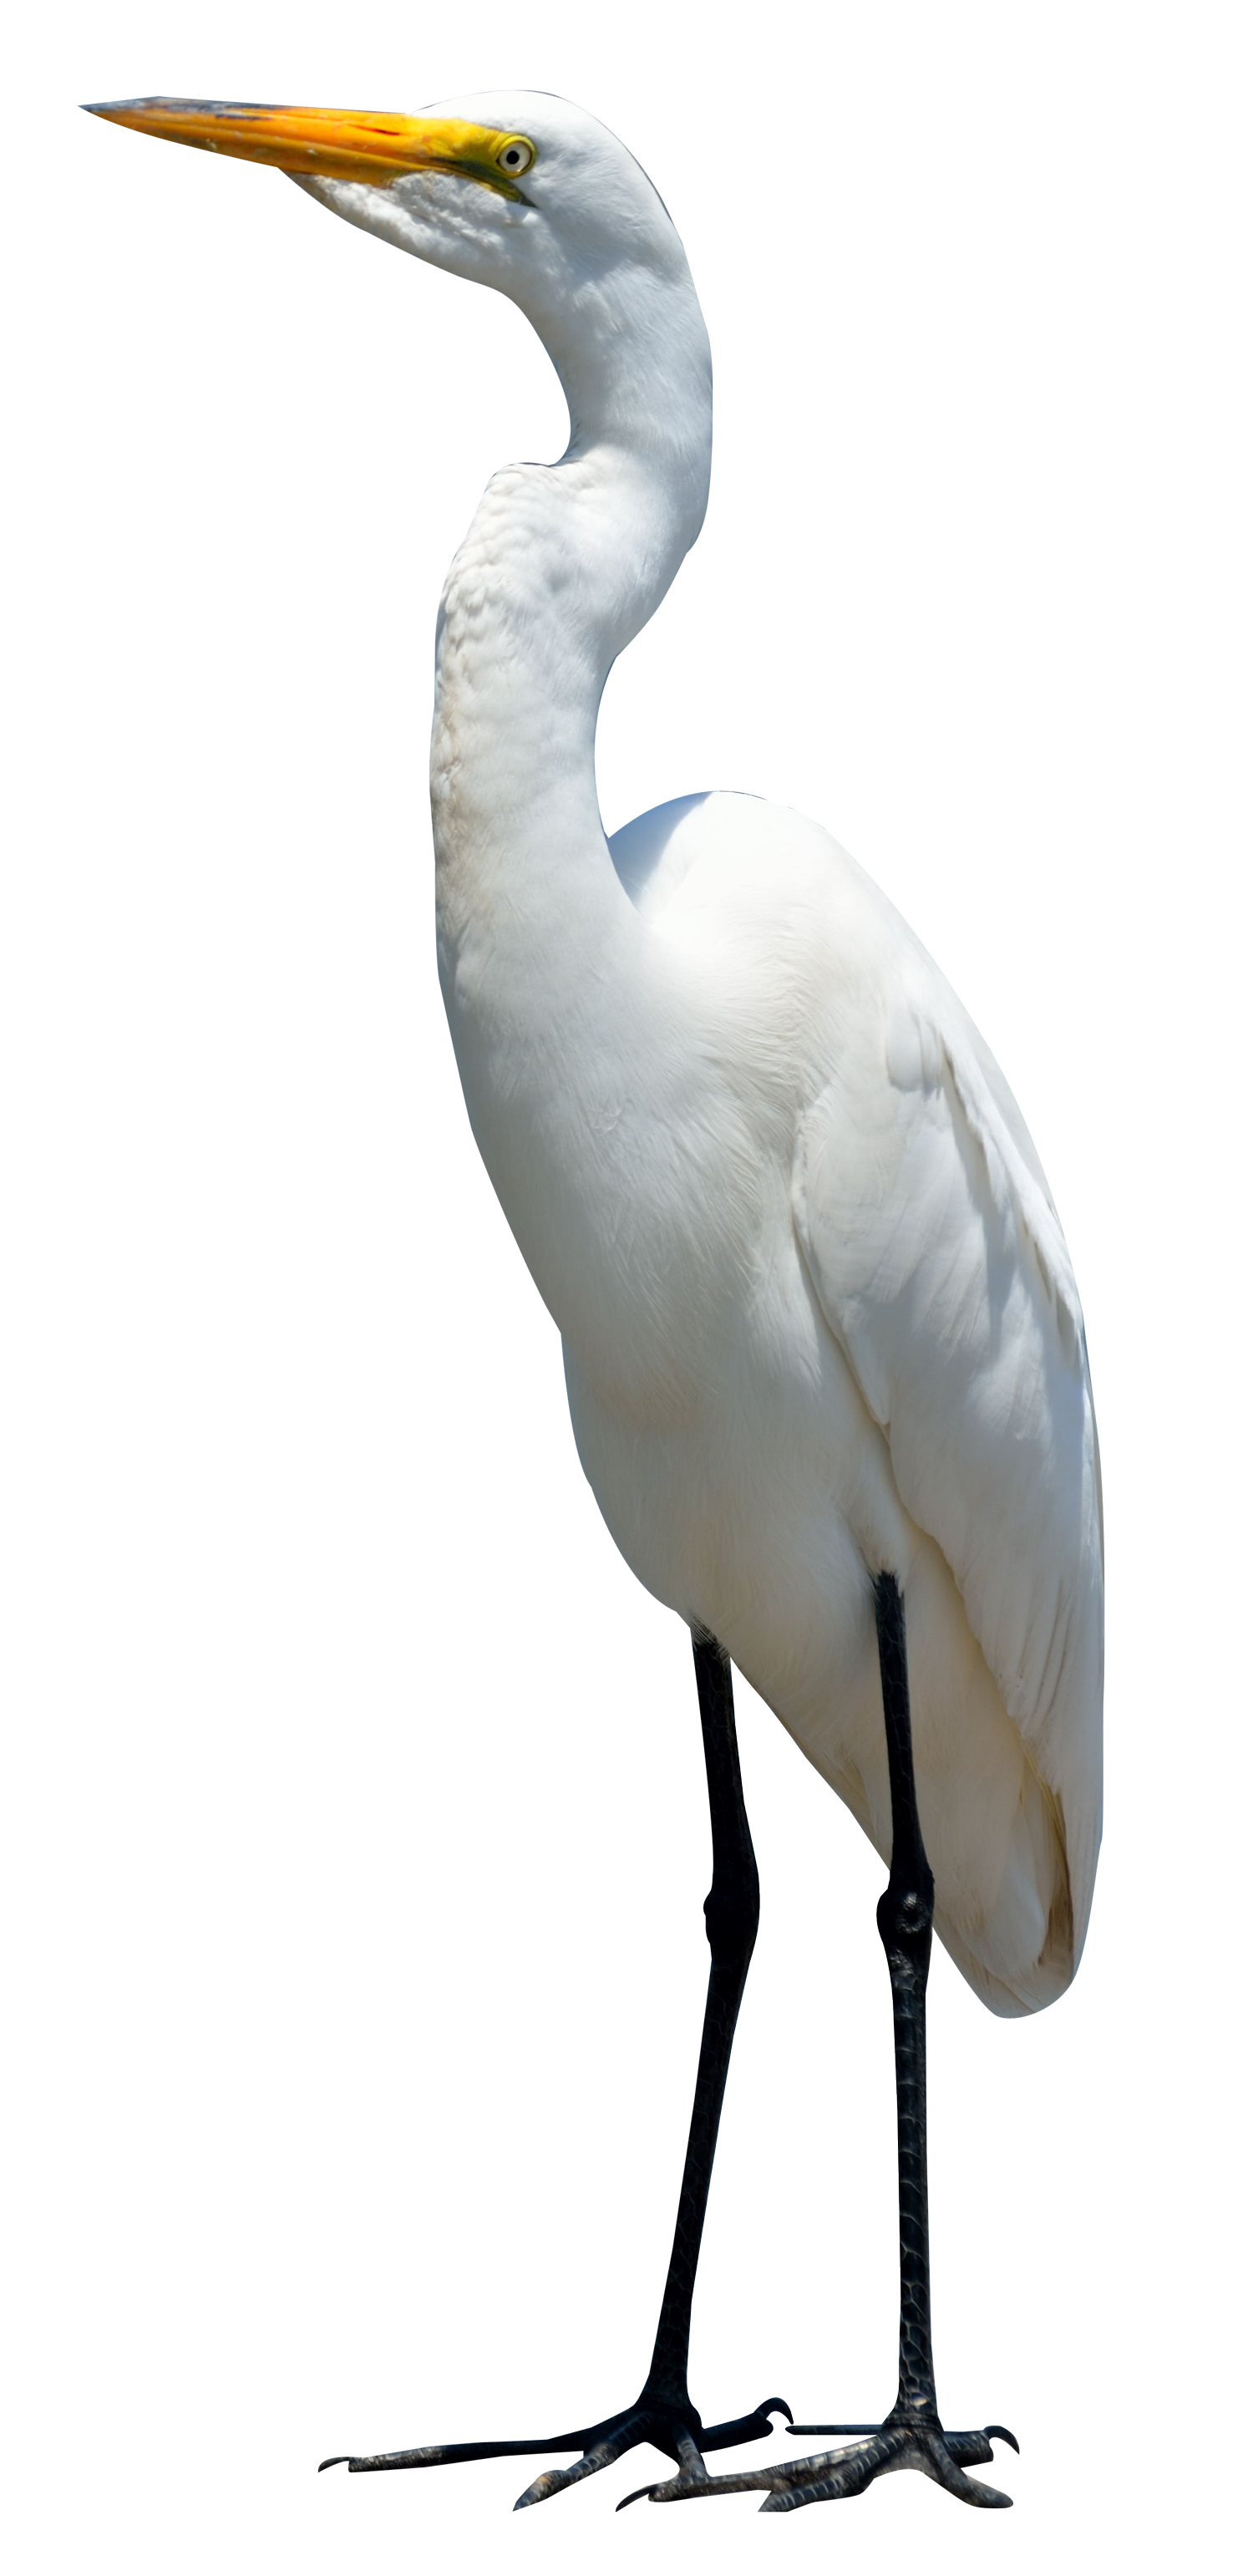 Egret Bird